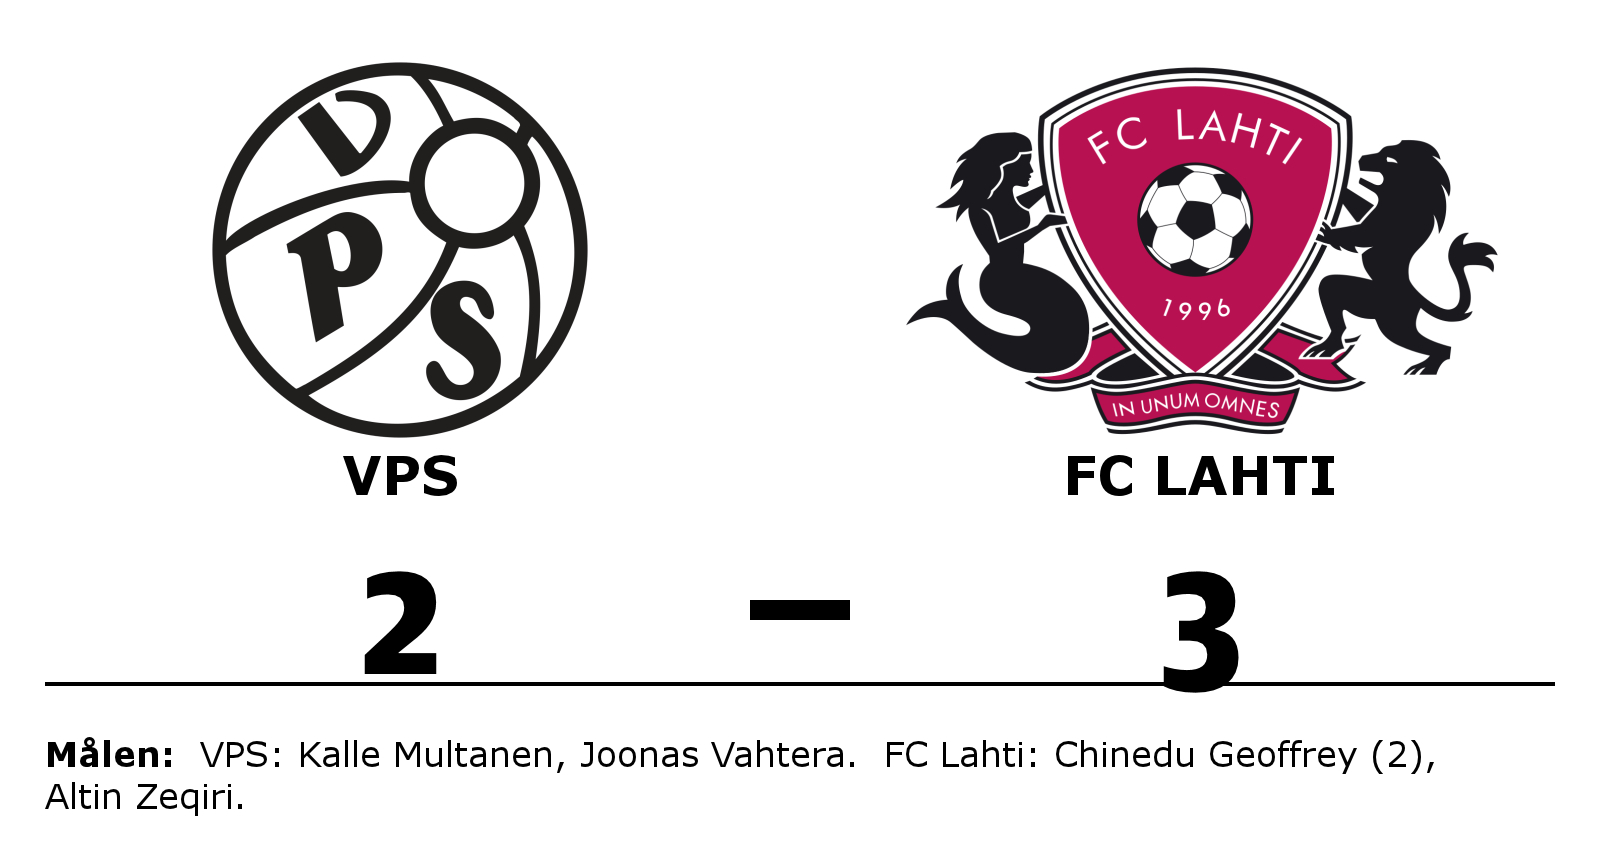 VPS förlorade mot FC Lahti